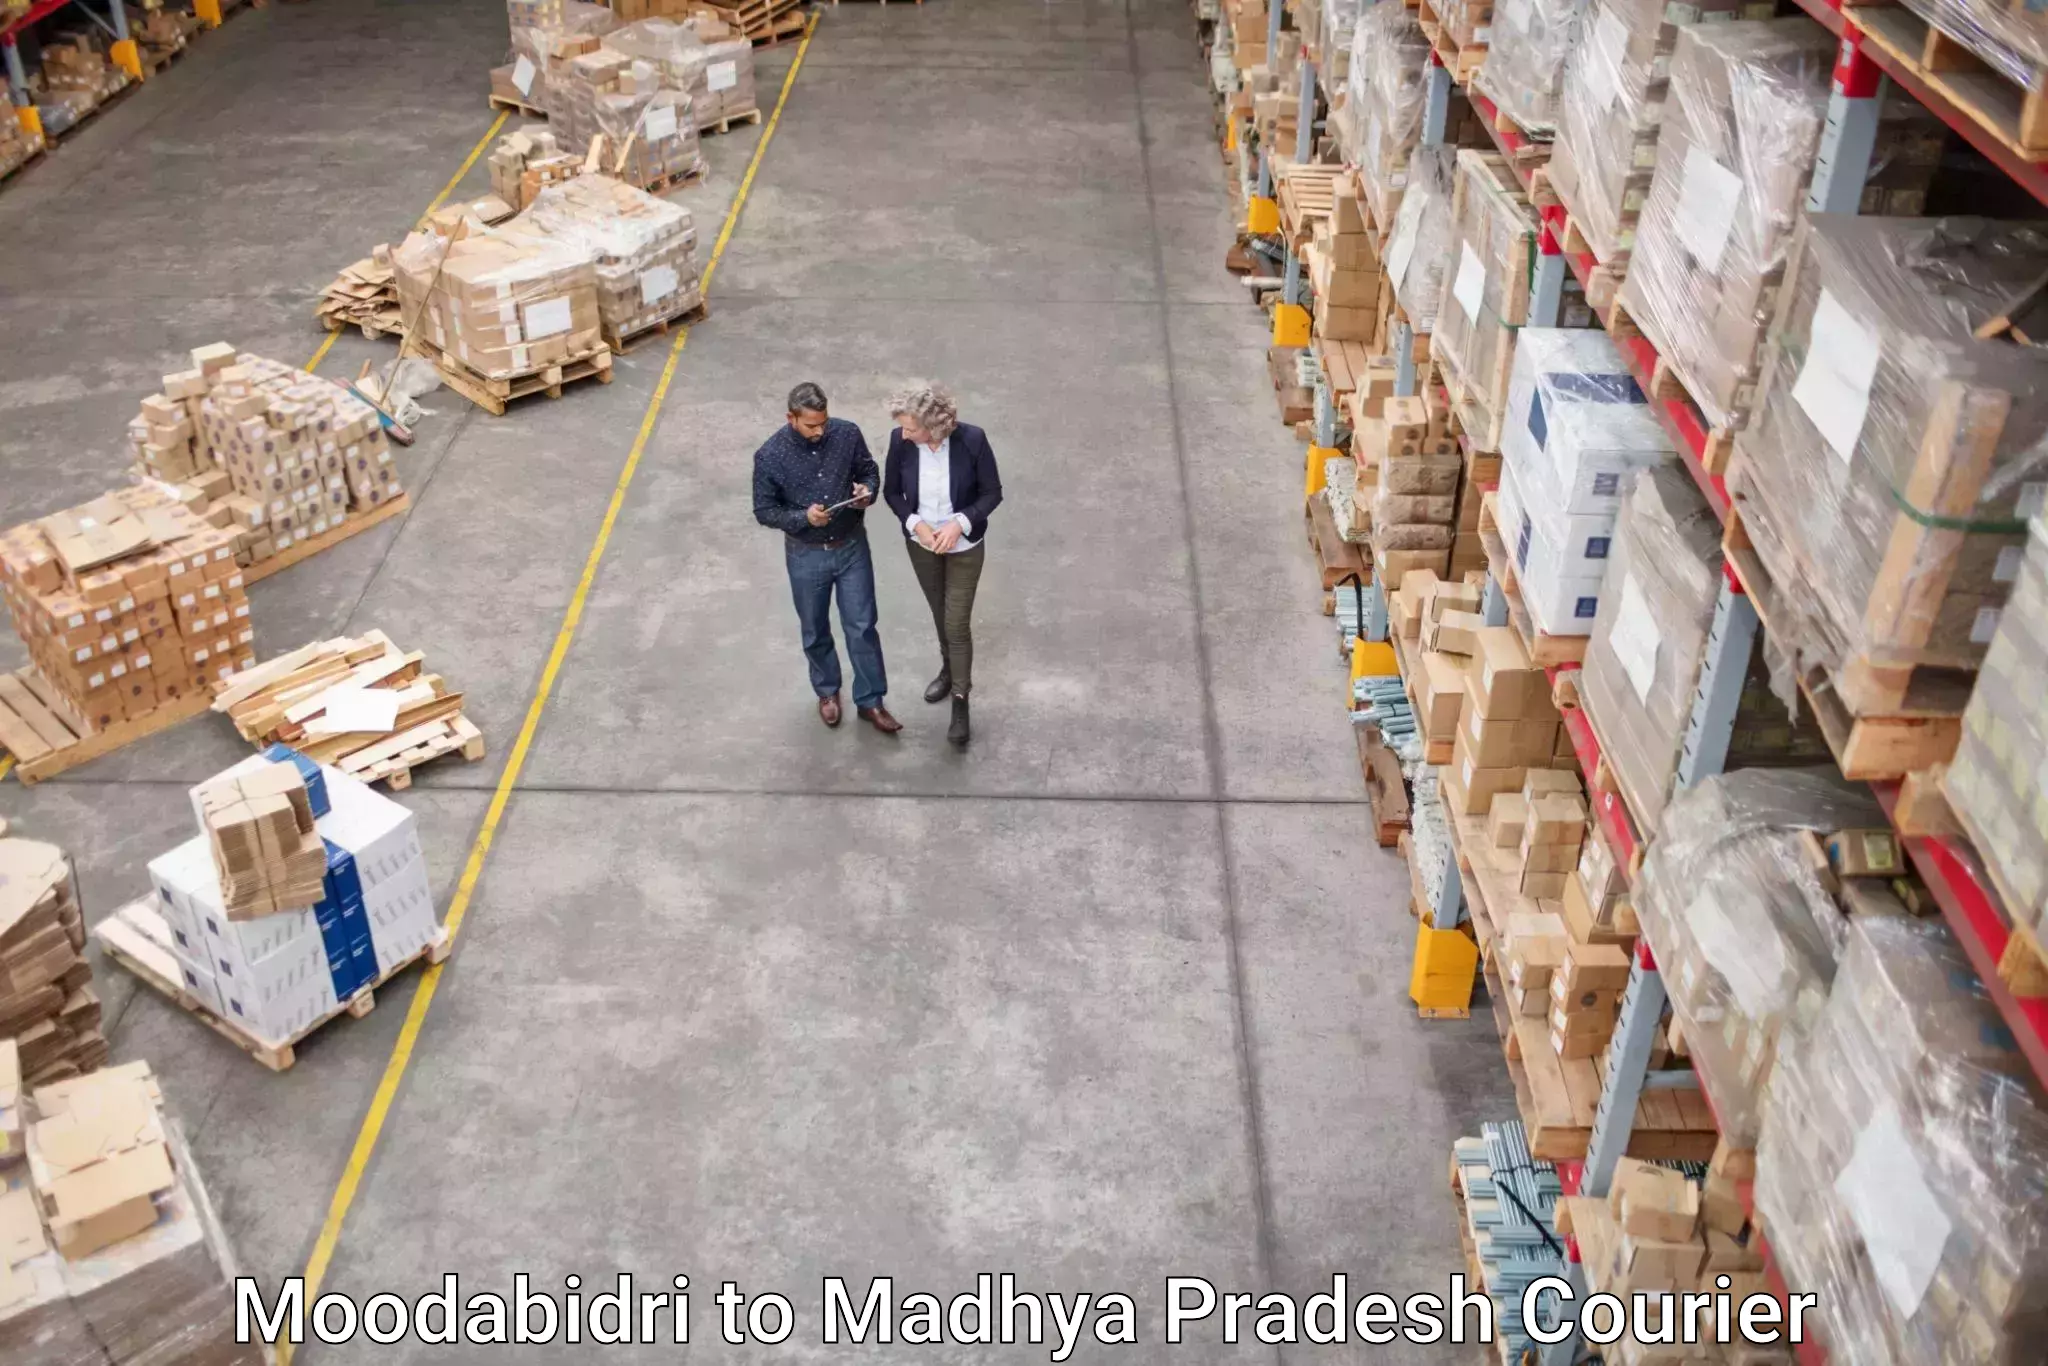 Express logistics providers Moodabidri to Burhanpur